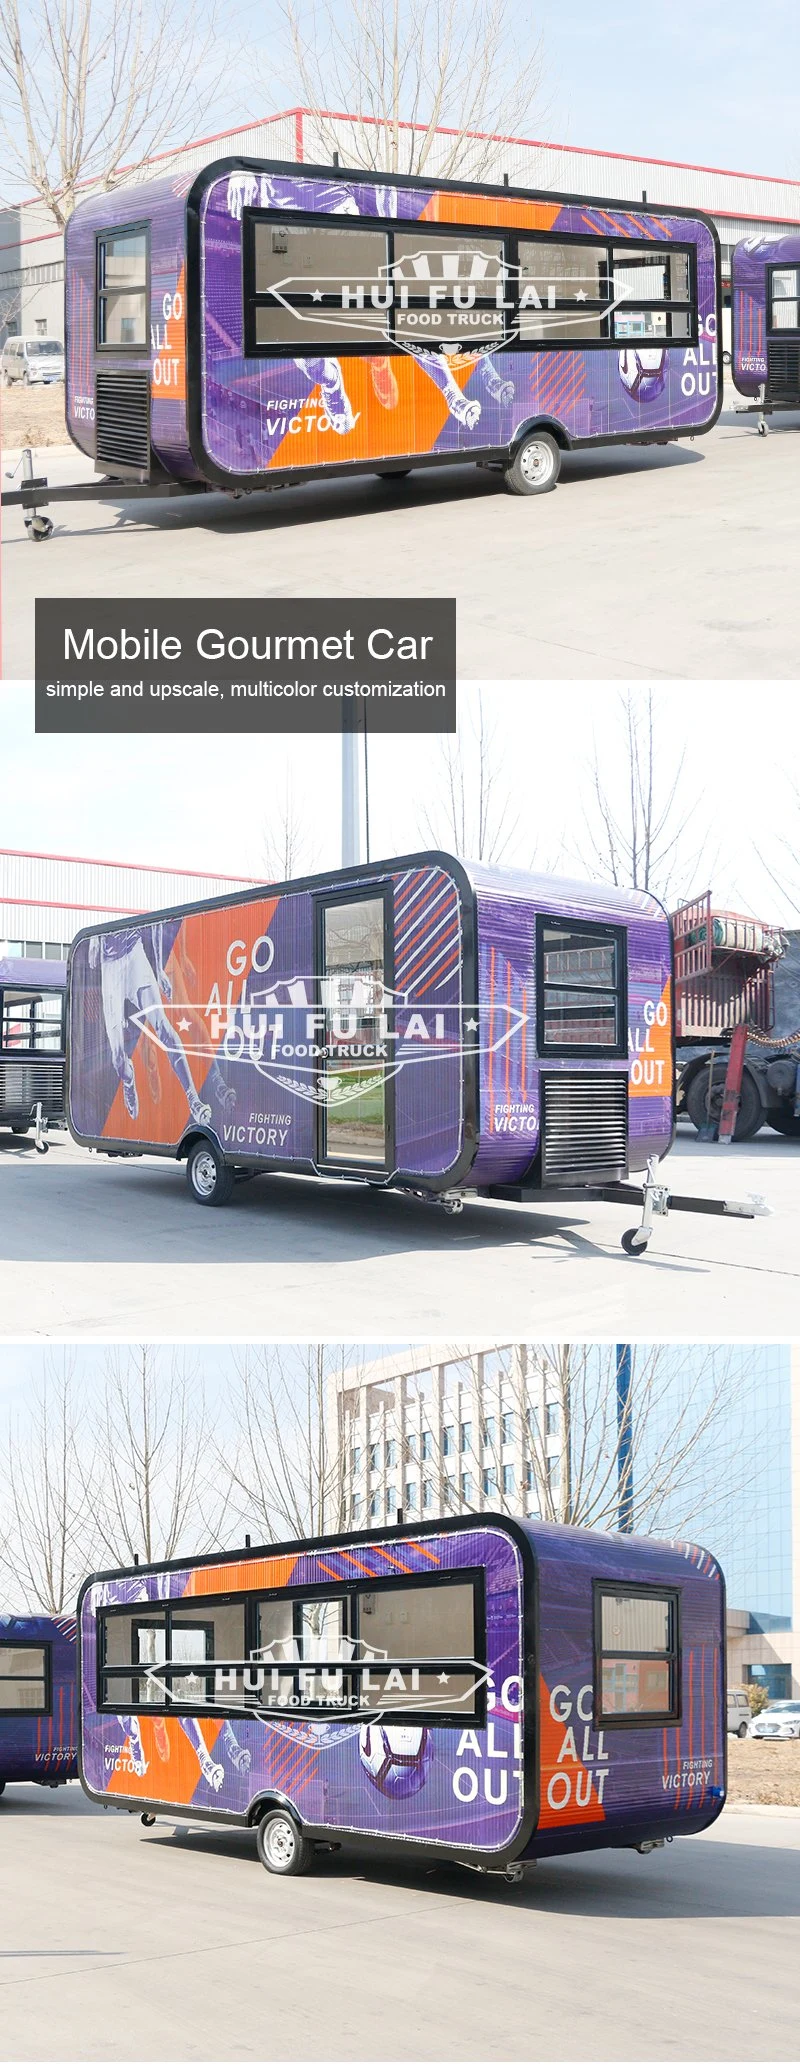 Easy Move Street Mobile Food Cart Kebab Food Van Trailer Food Kiosk for Sale in Germany